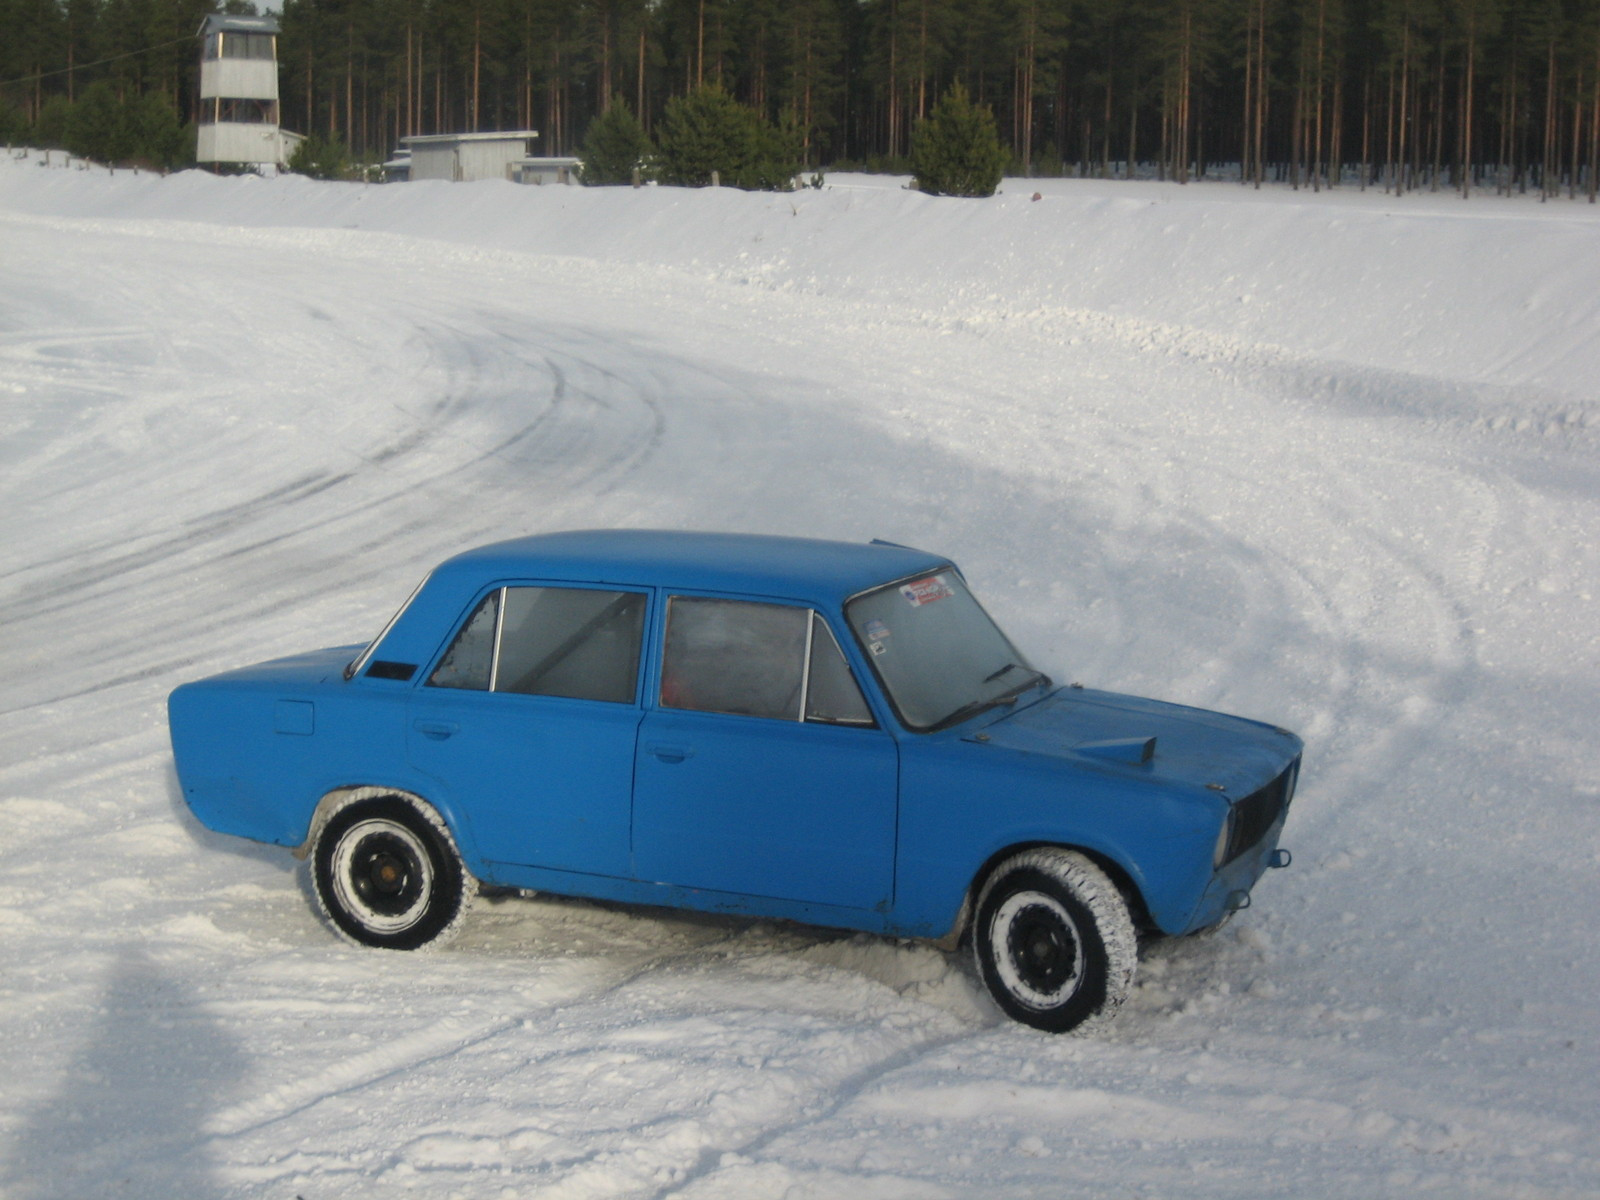 X-treme On Ice 17.2.2007, Sininen Lada